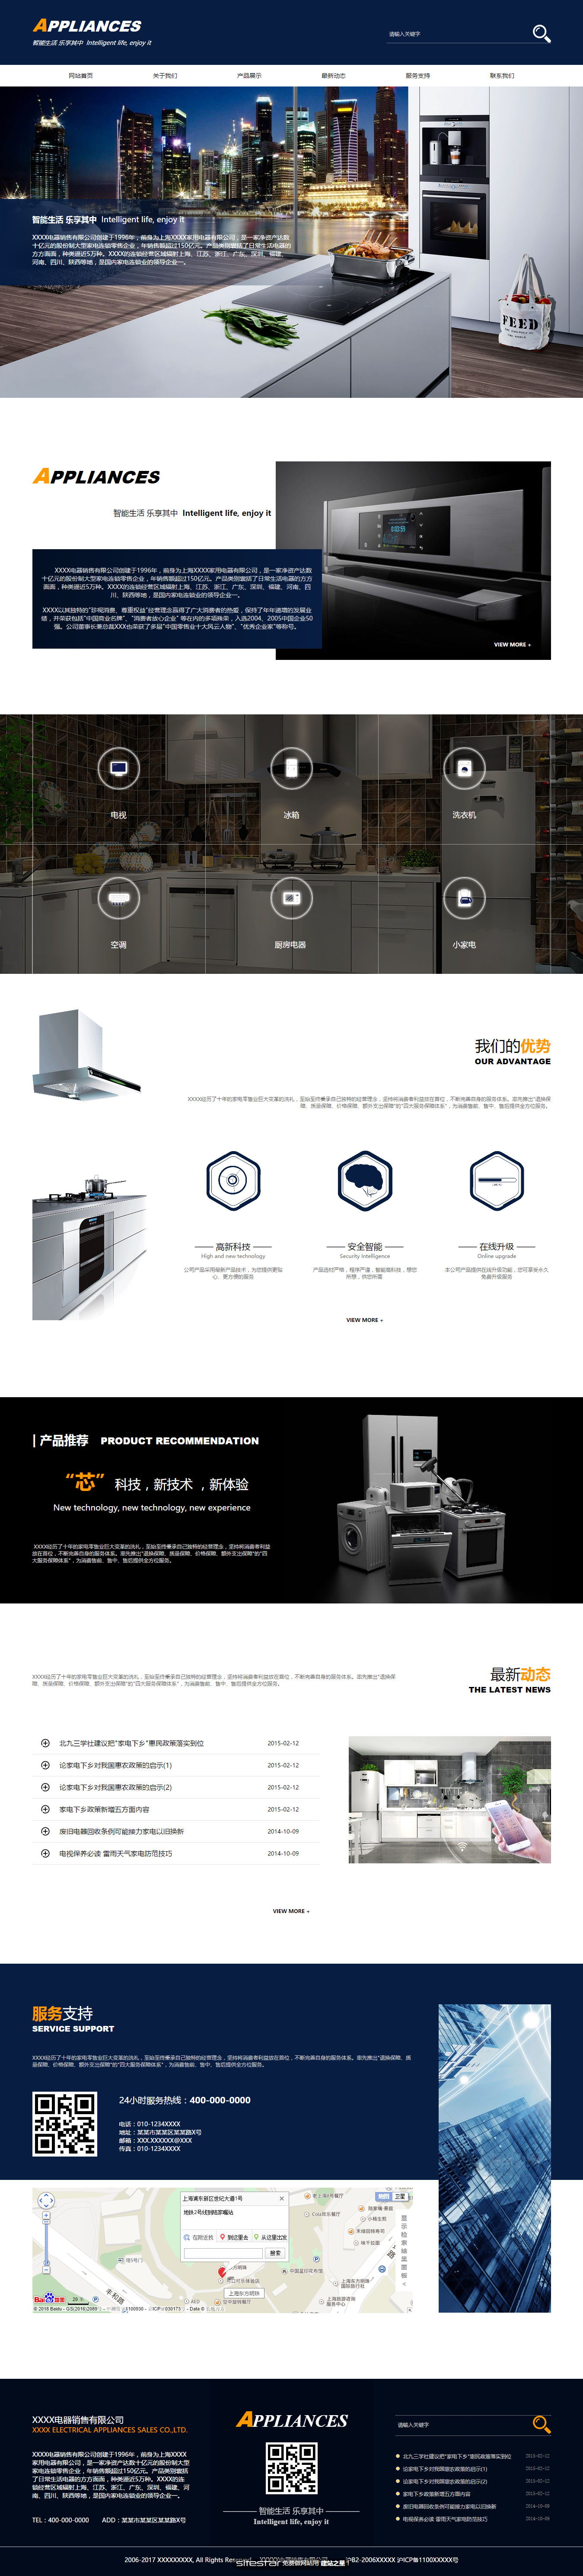 家电网站模板-appliances-311